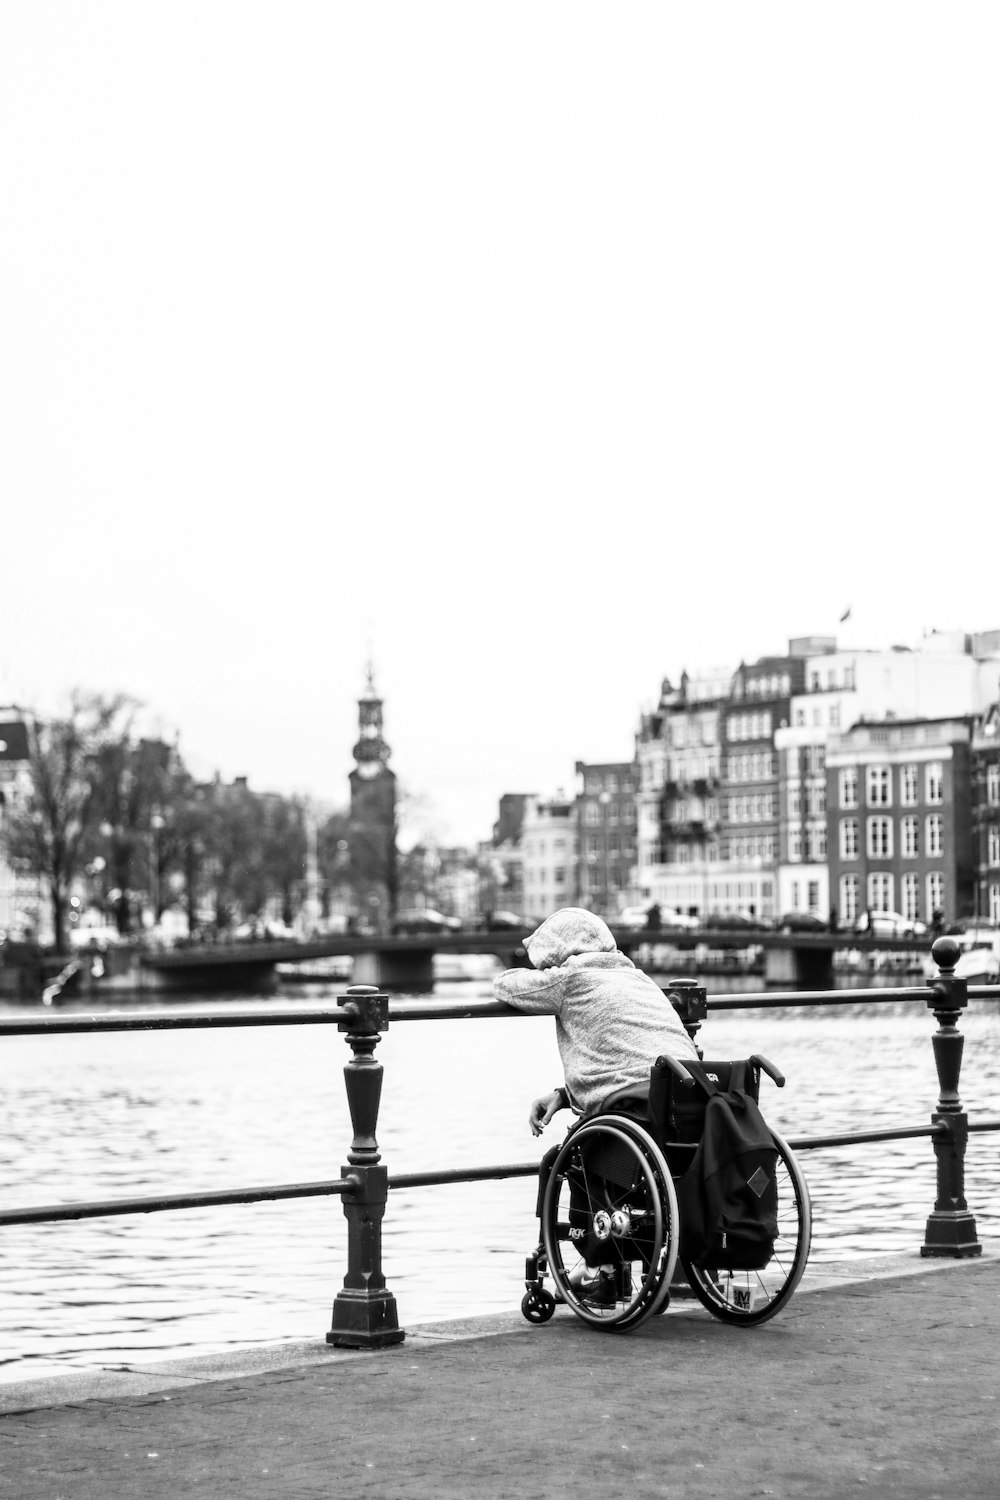 Foto in scala di grigi dell'uomo che va in bicicletta sul ponte